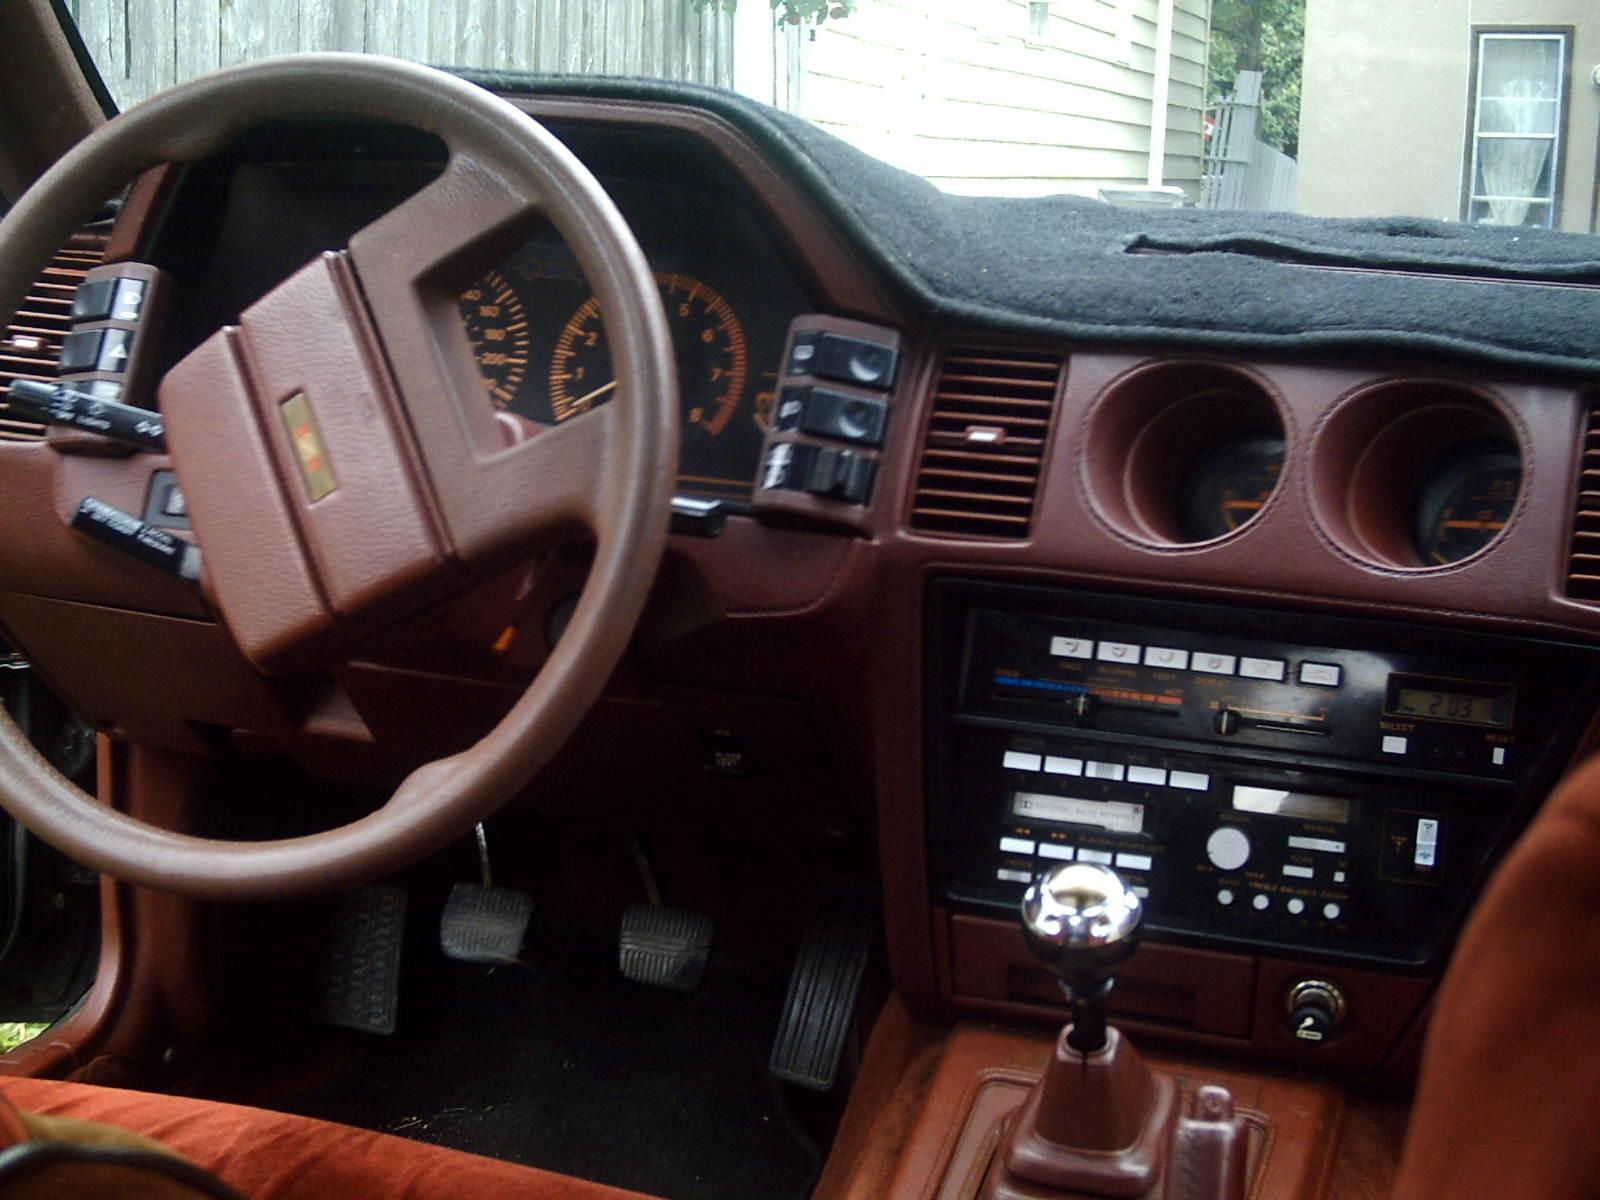 Nissan 300zx 1984 interior #5